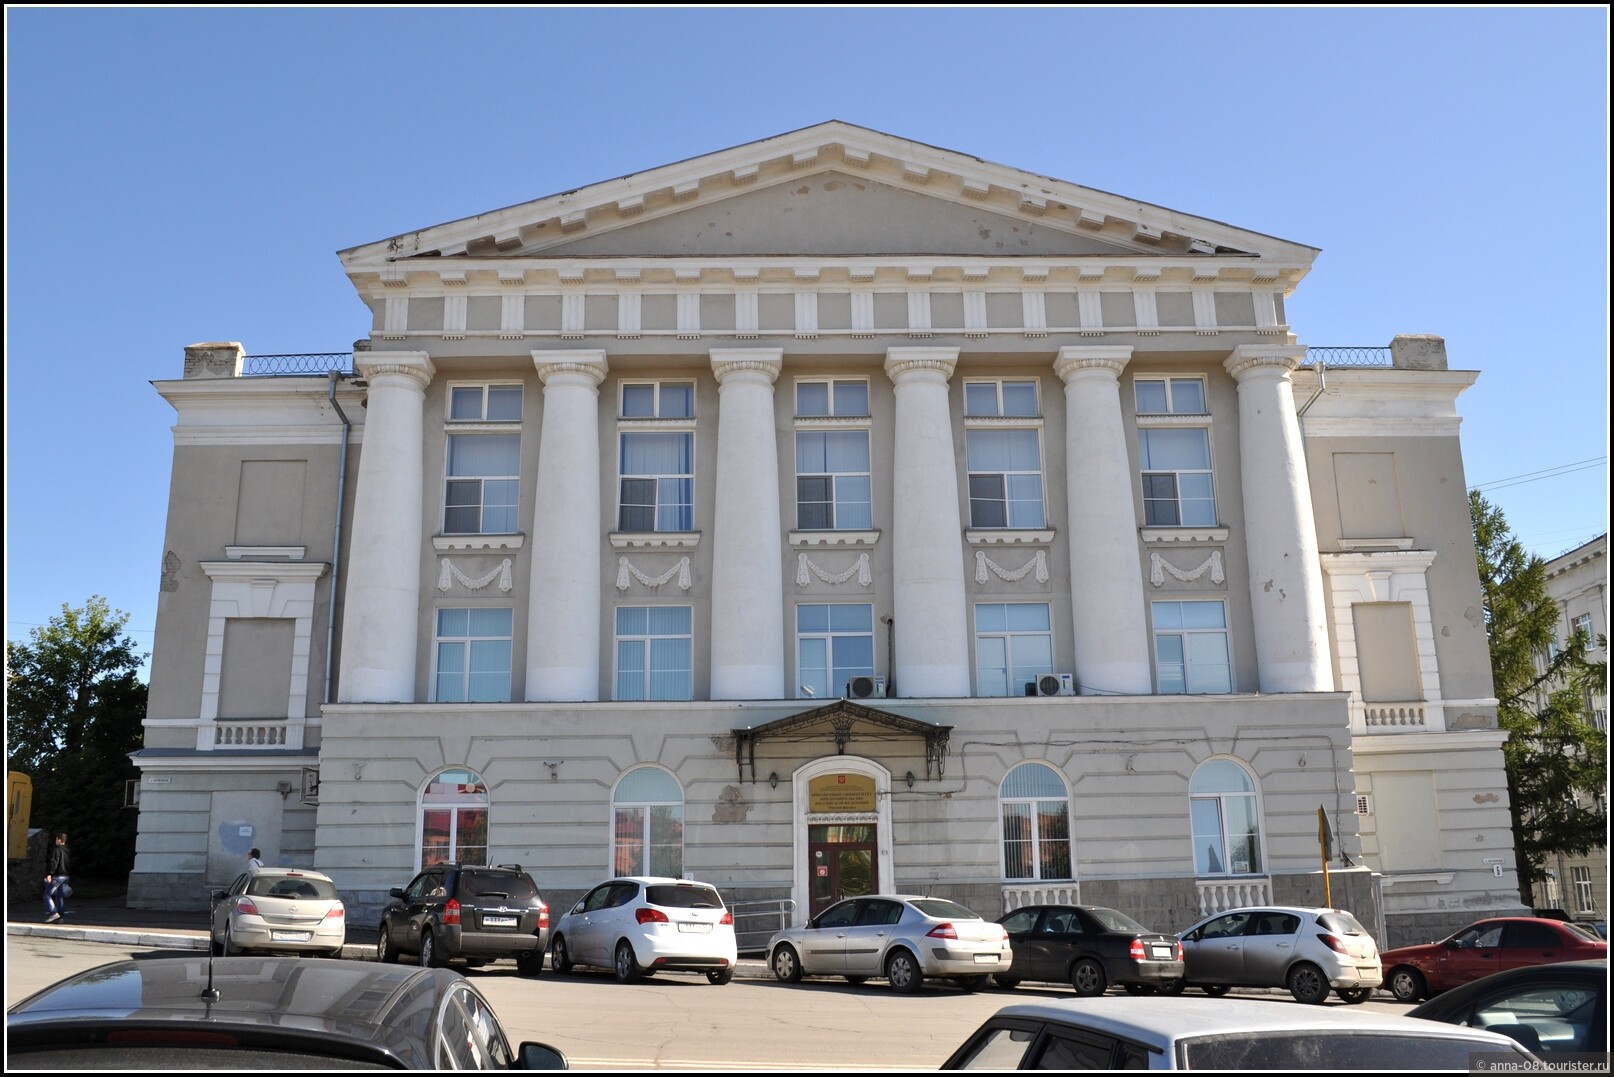 Университет правительства россии